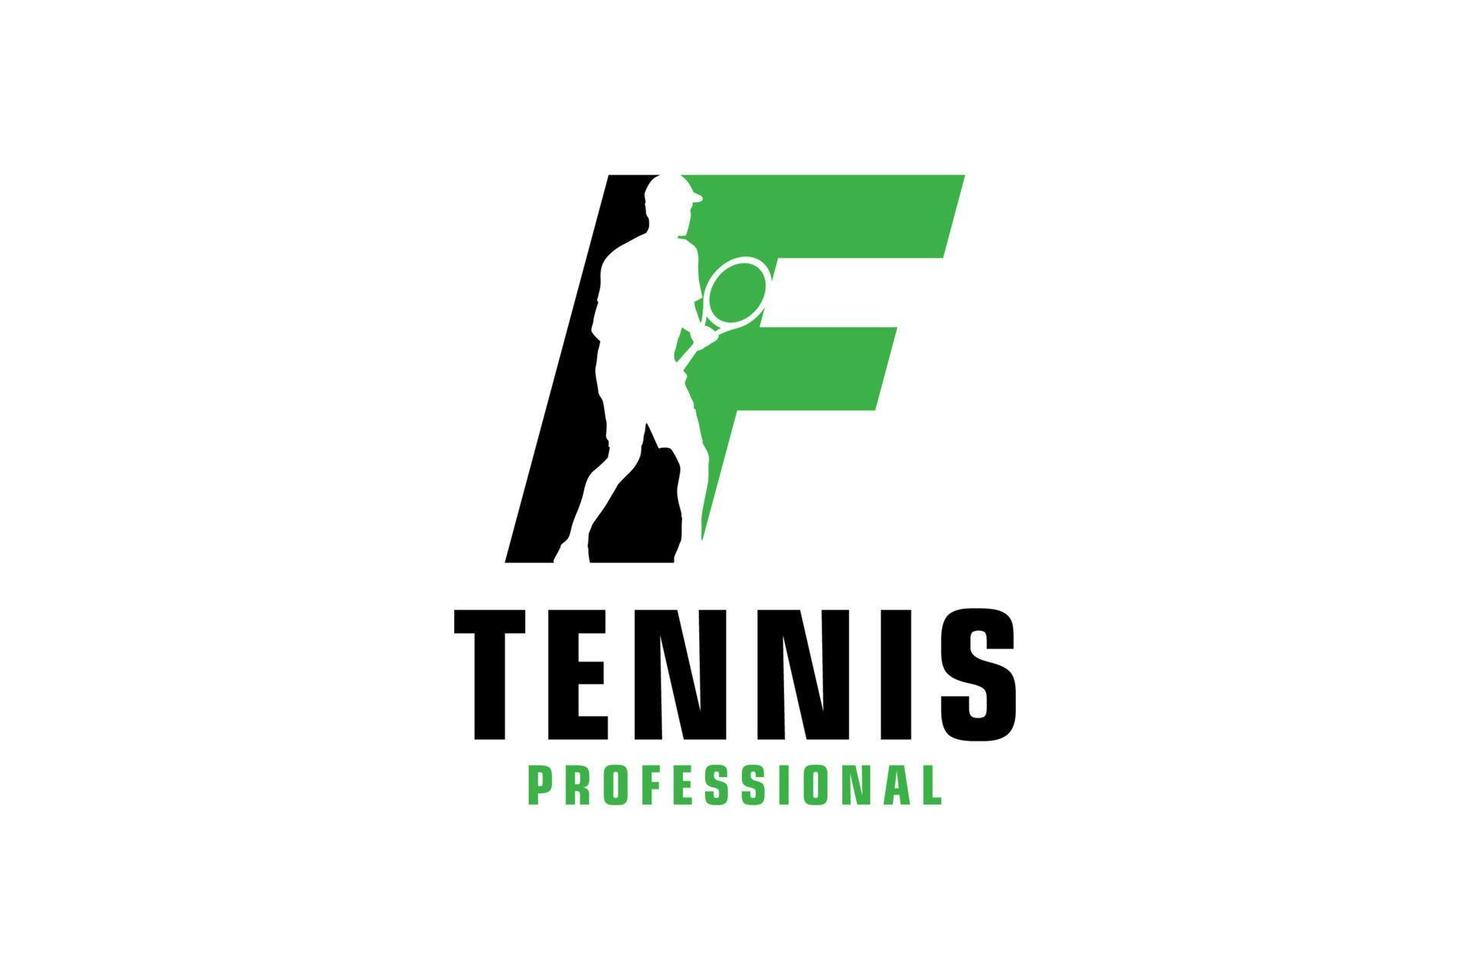 buchstabe f mit tennisspieler-silhouette-logo-design. Vektordesign-Vorlagenelemente für Sportteams oder Corporate Identity. vektor